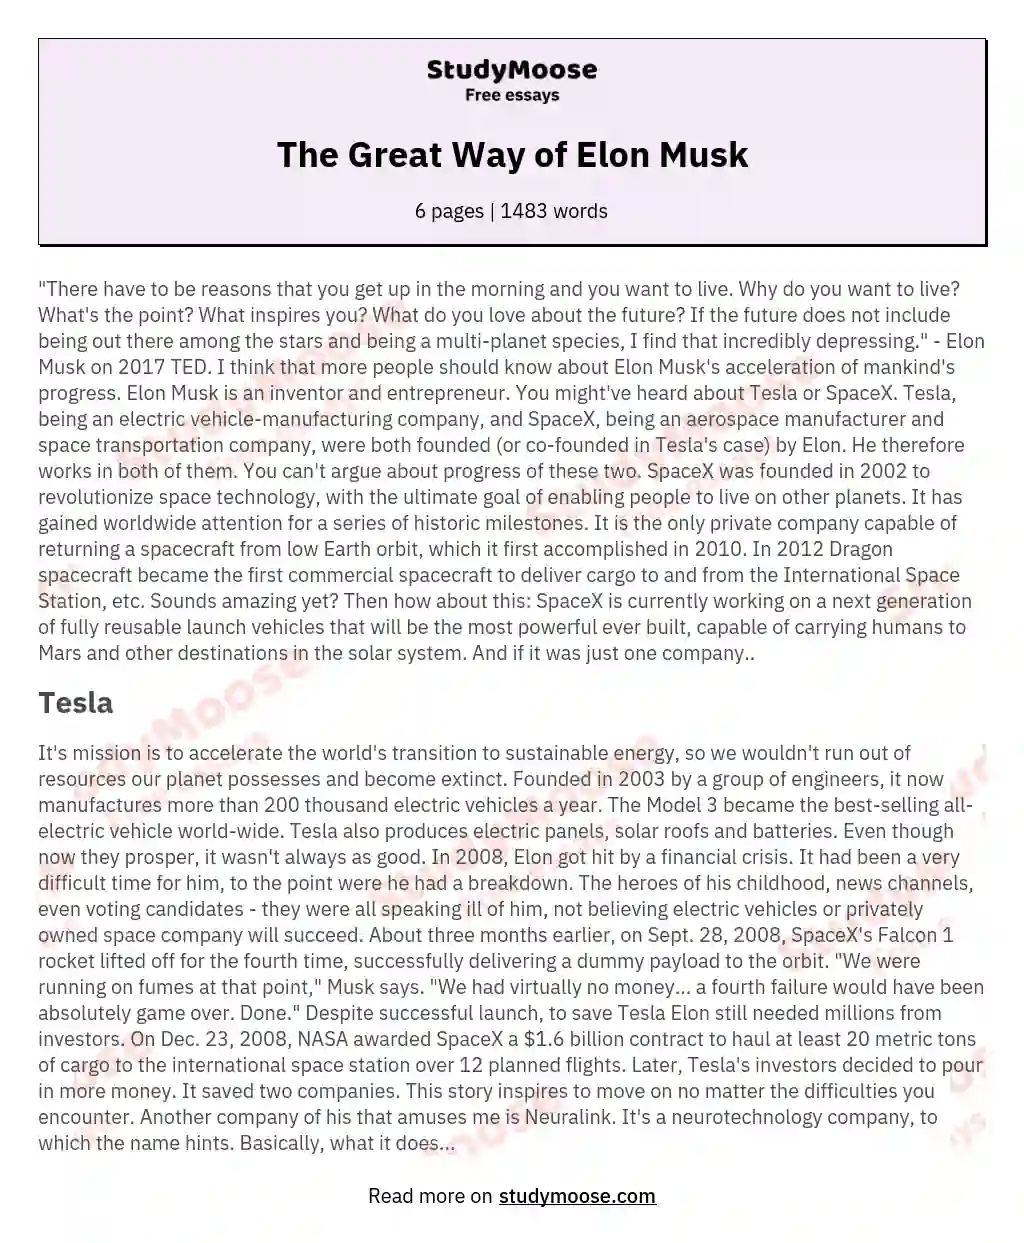 elon musk essay 100 words